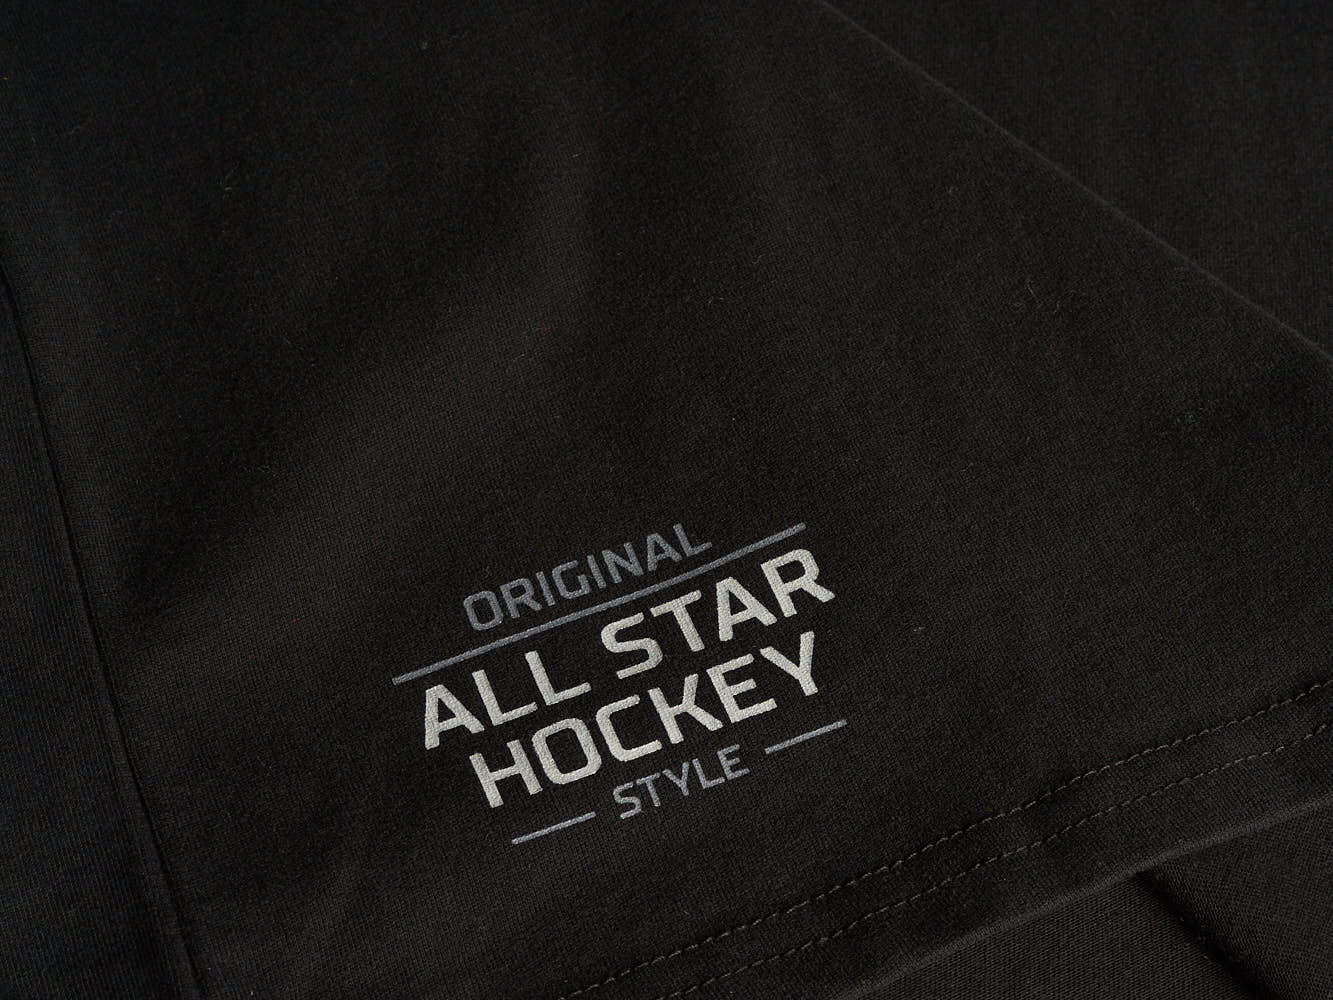  Atributika & club KHL ALL STAR 2020 SR